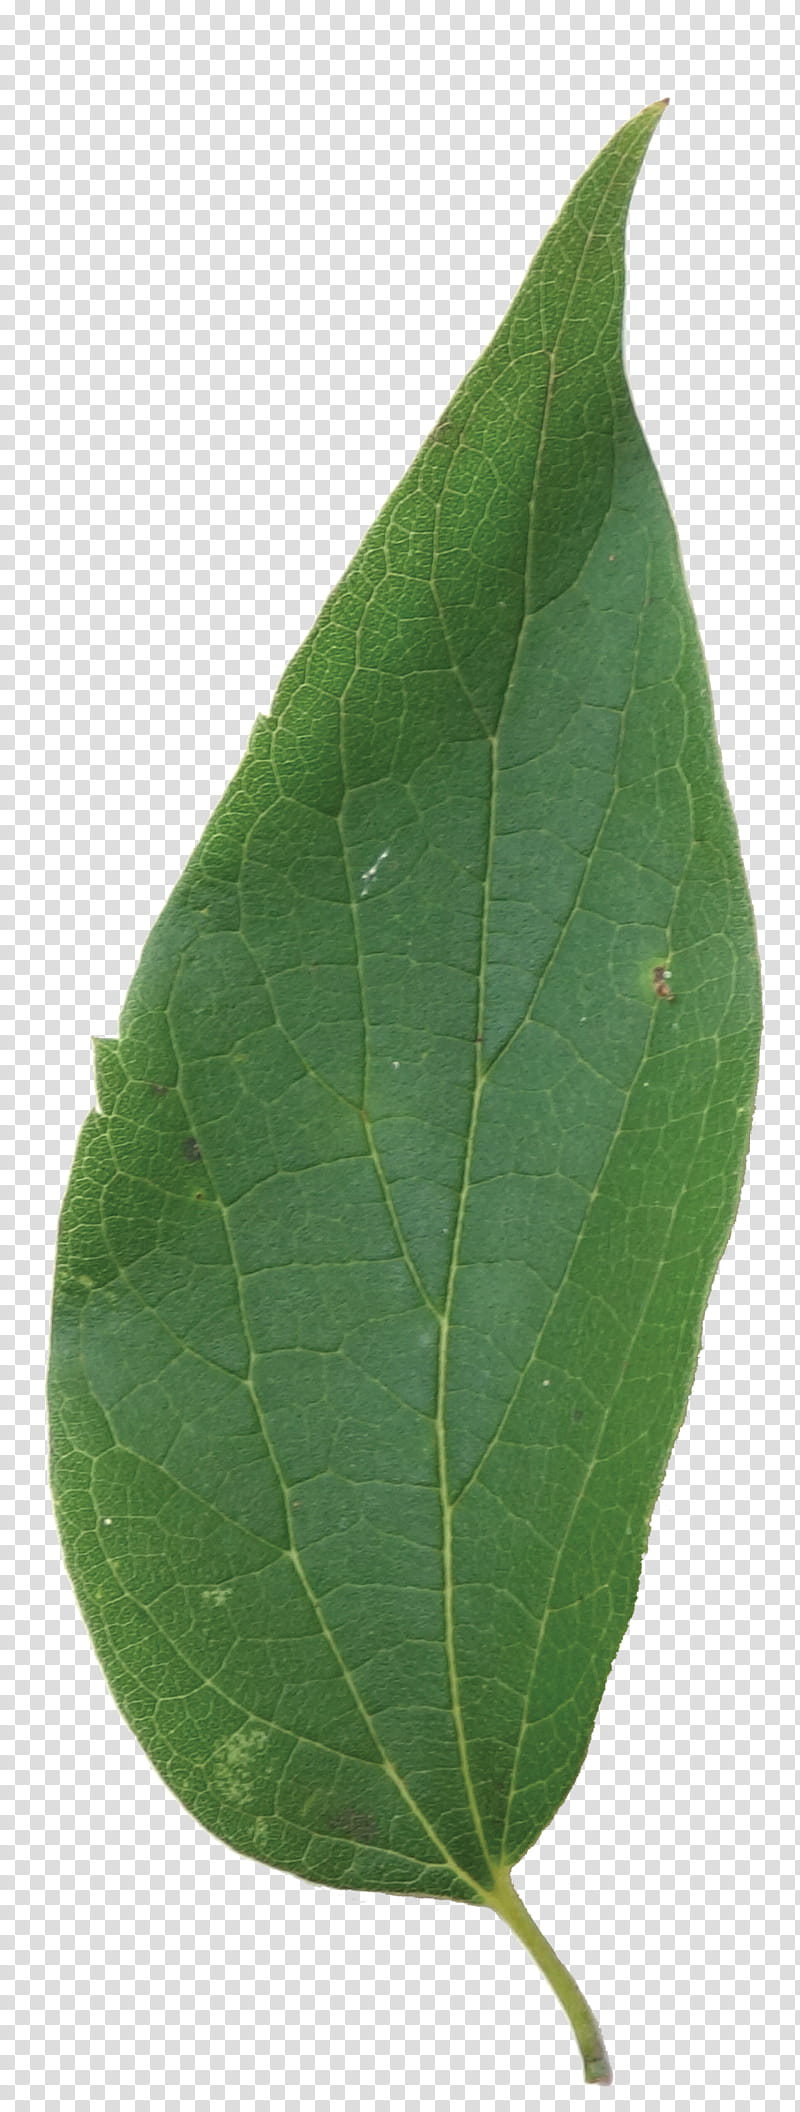 Green Leaf, Plant Pathology, Plants, Flower, Tree, Bay Leaf transparent background PNG clipart